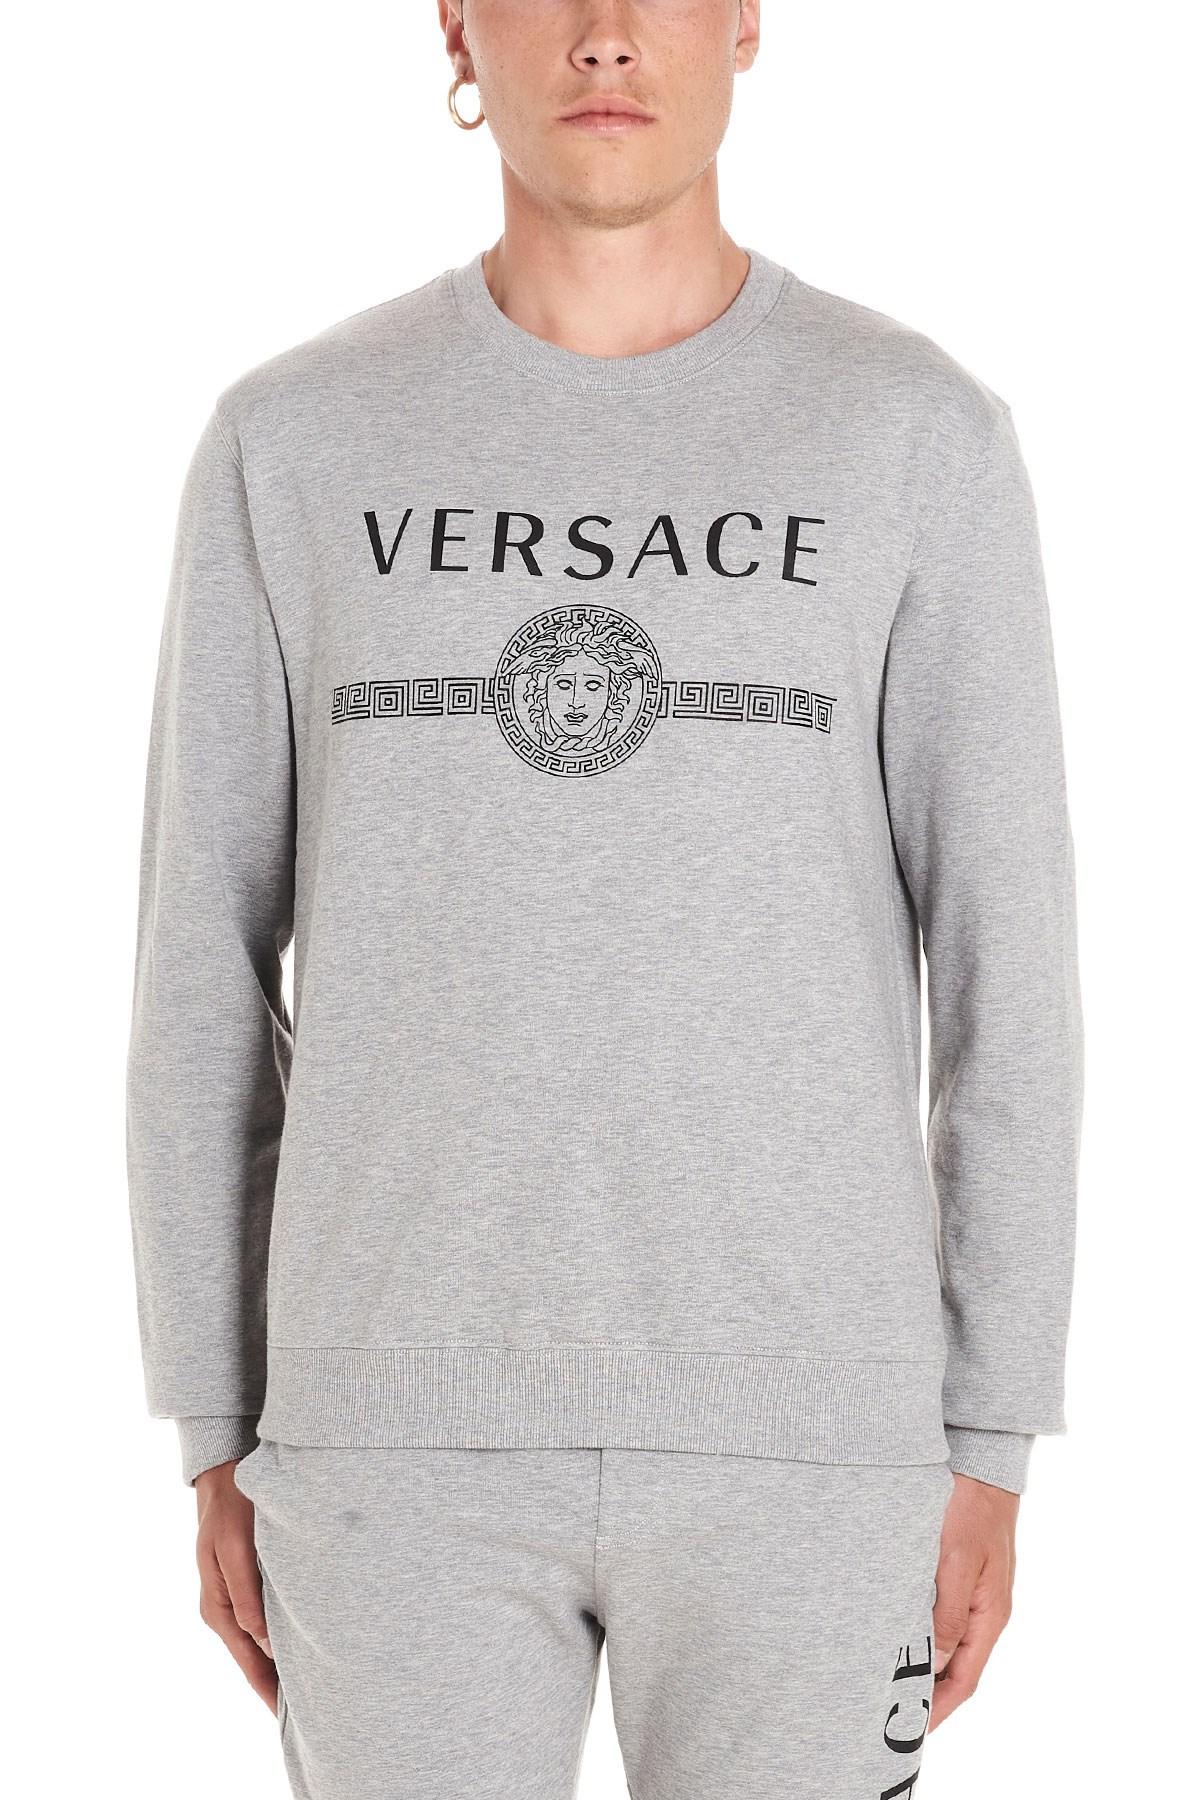 Versace Logo Sweatshirt in Gray for Men - Save 17% - Lyst